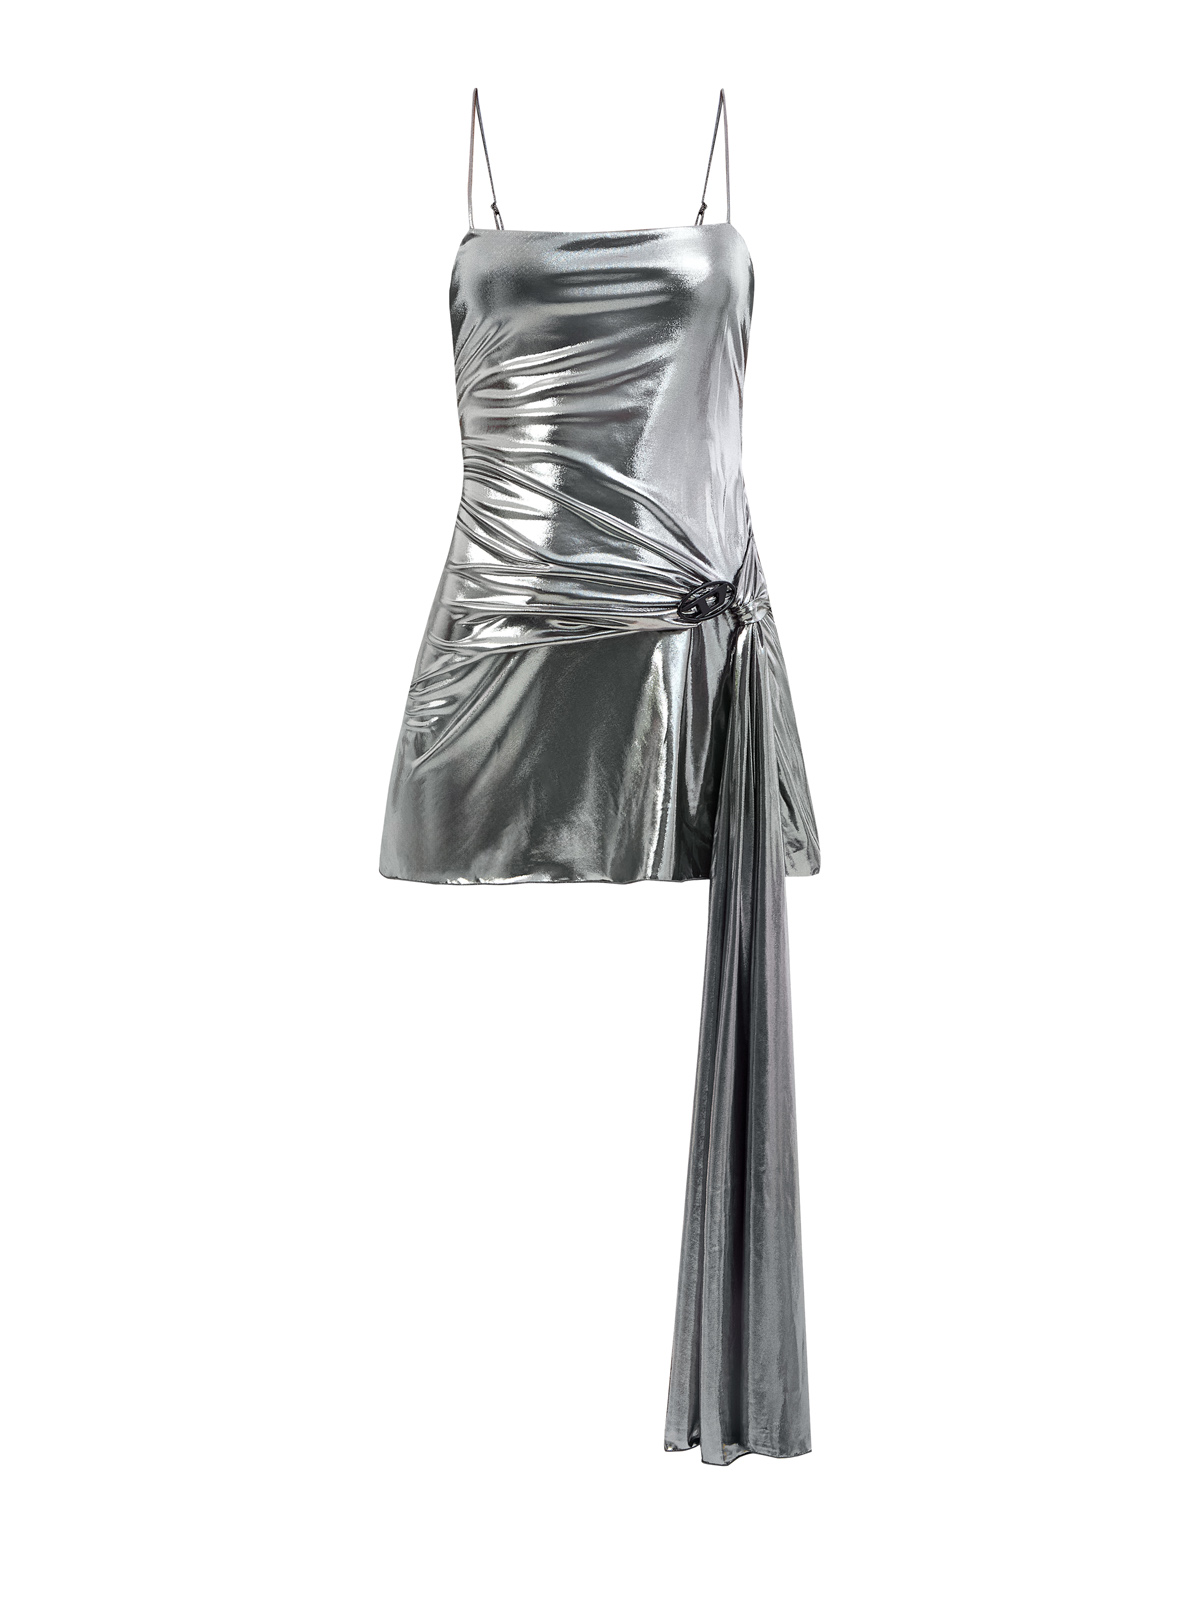   Интермода Платье-мини D-Blas цвета металлик с драпированной вставкой